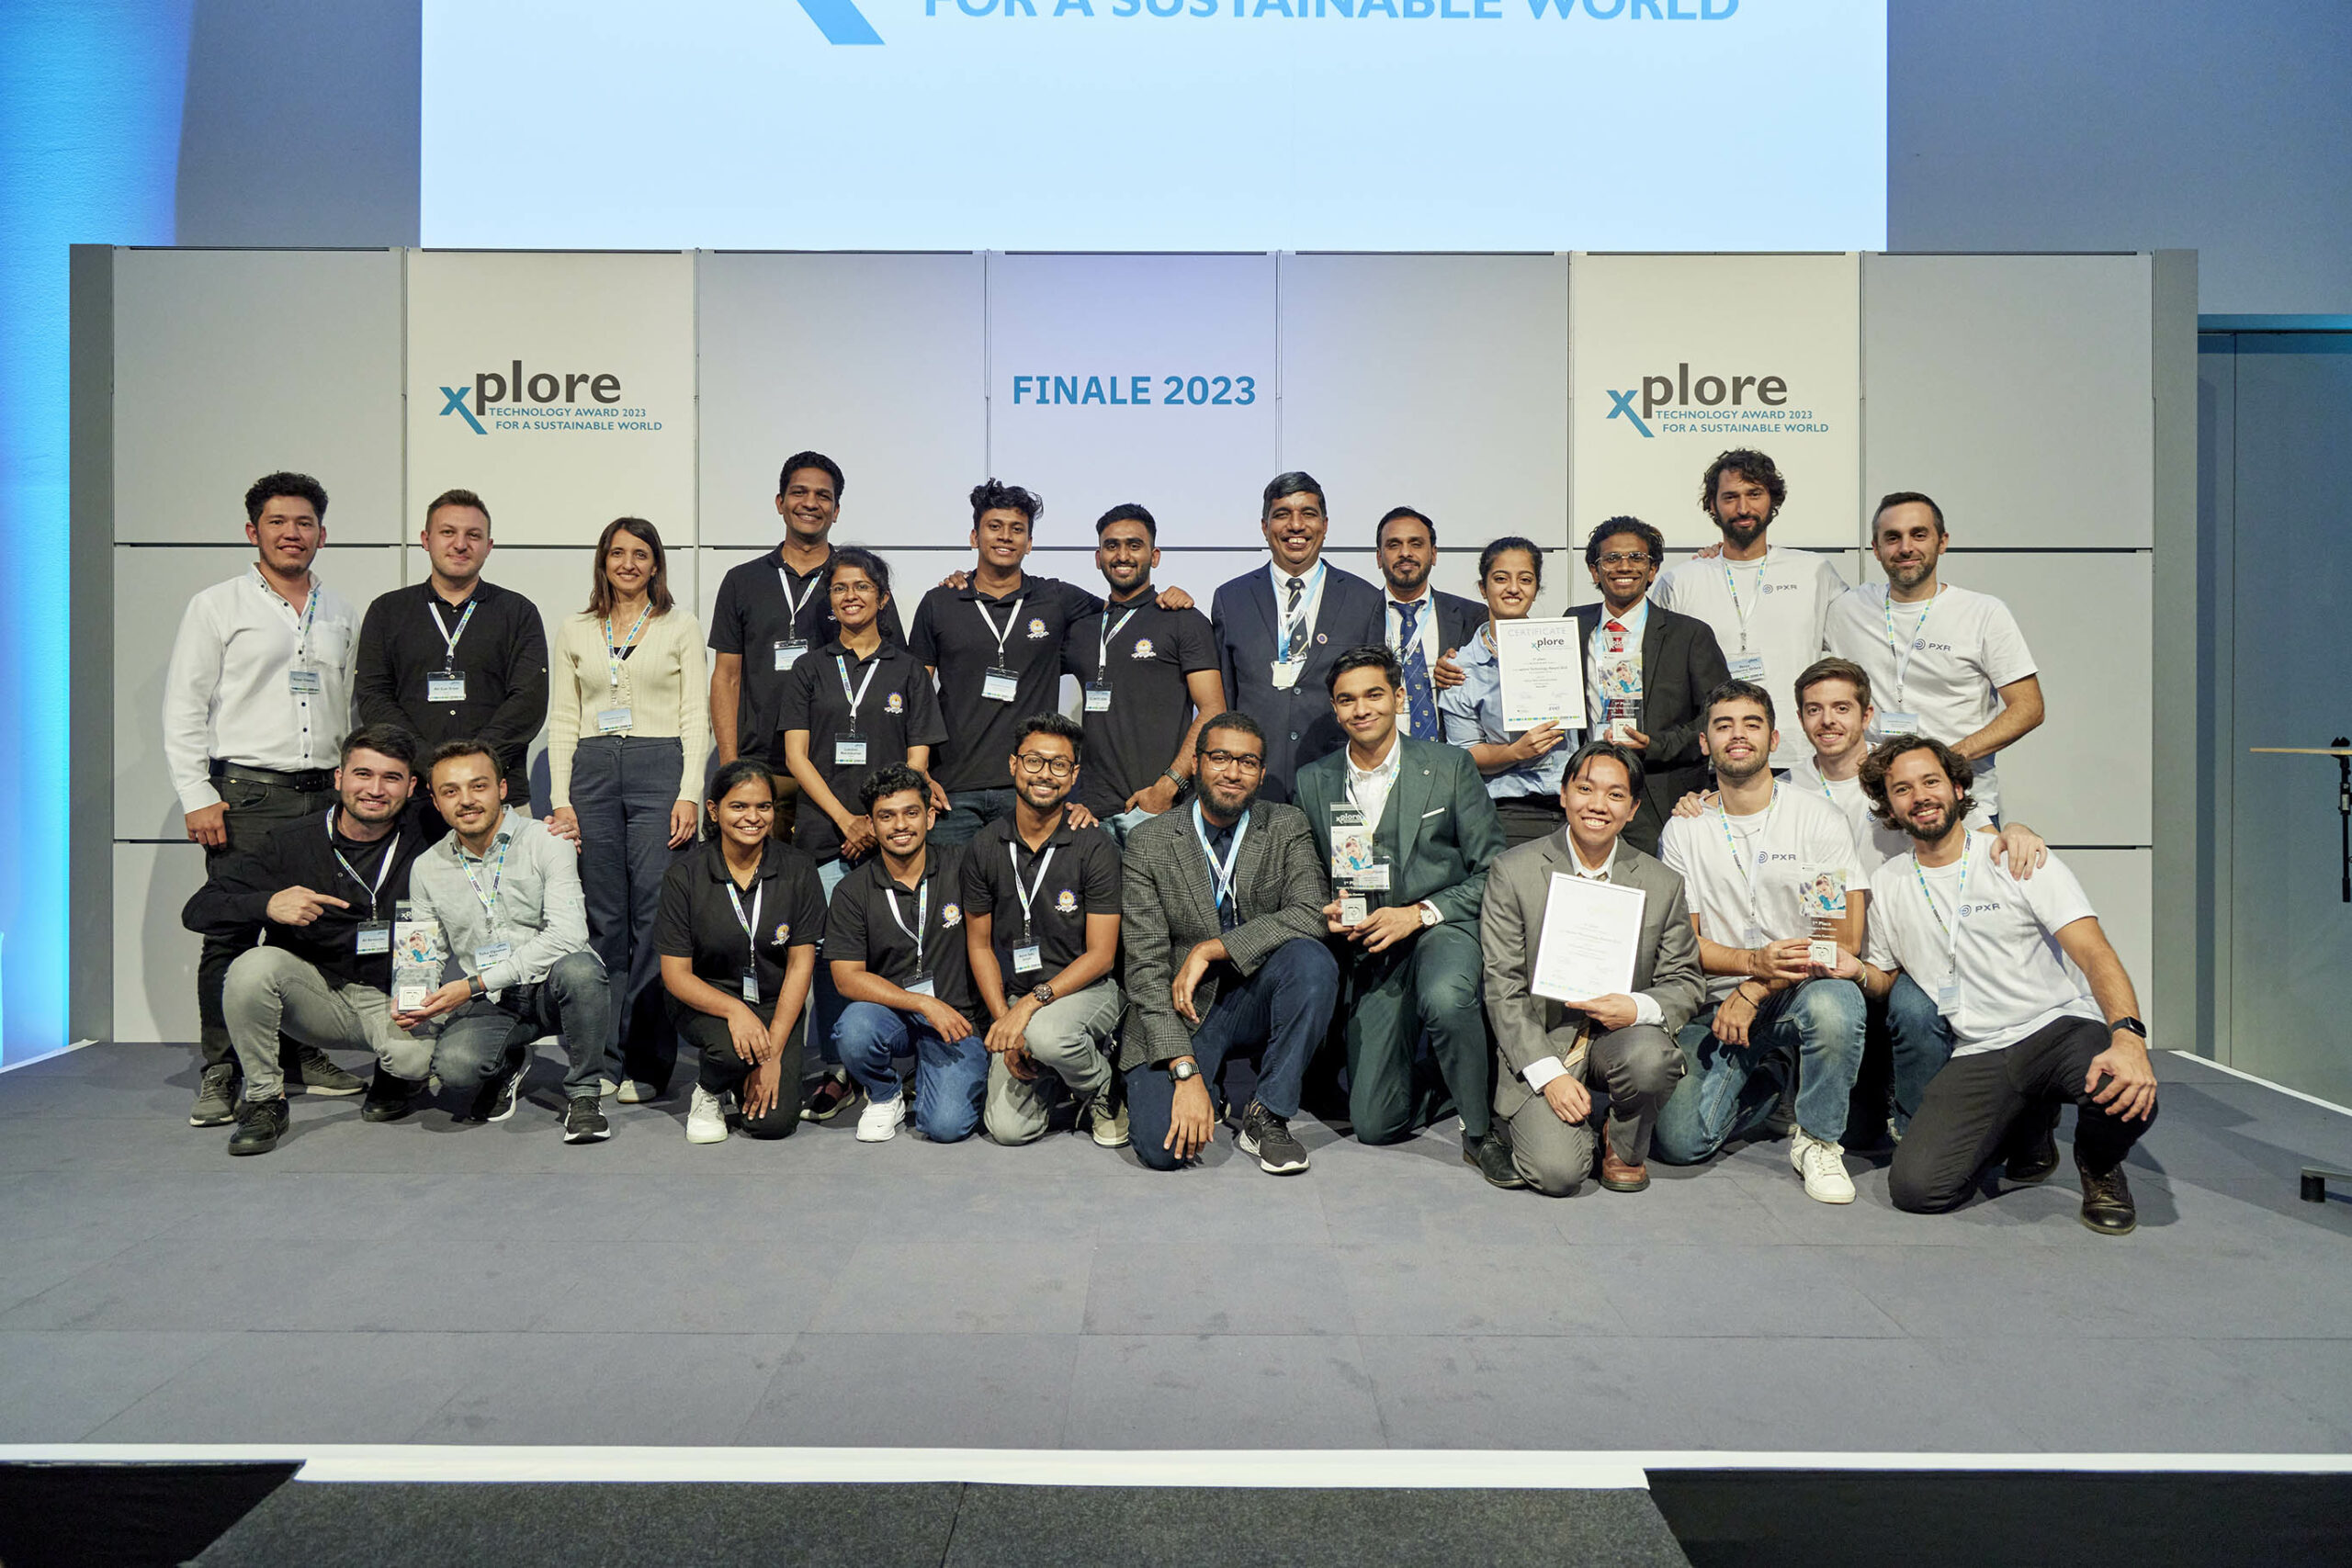 Hier sind sie! Die Gewinner unseres xplore 2023 Technology Award for a sustainable world